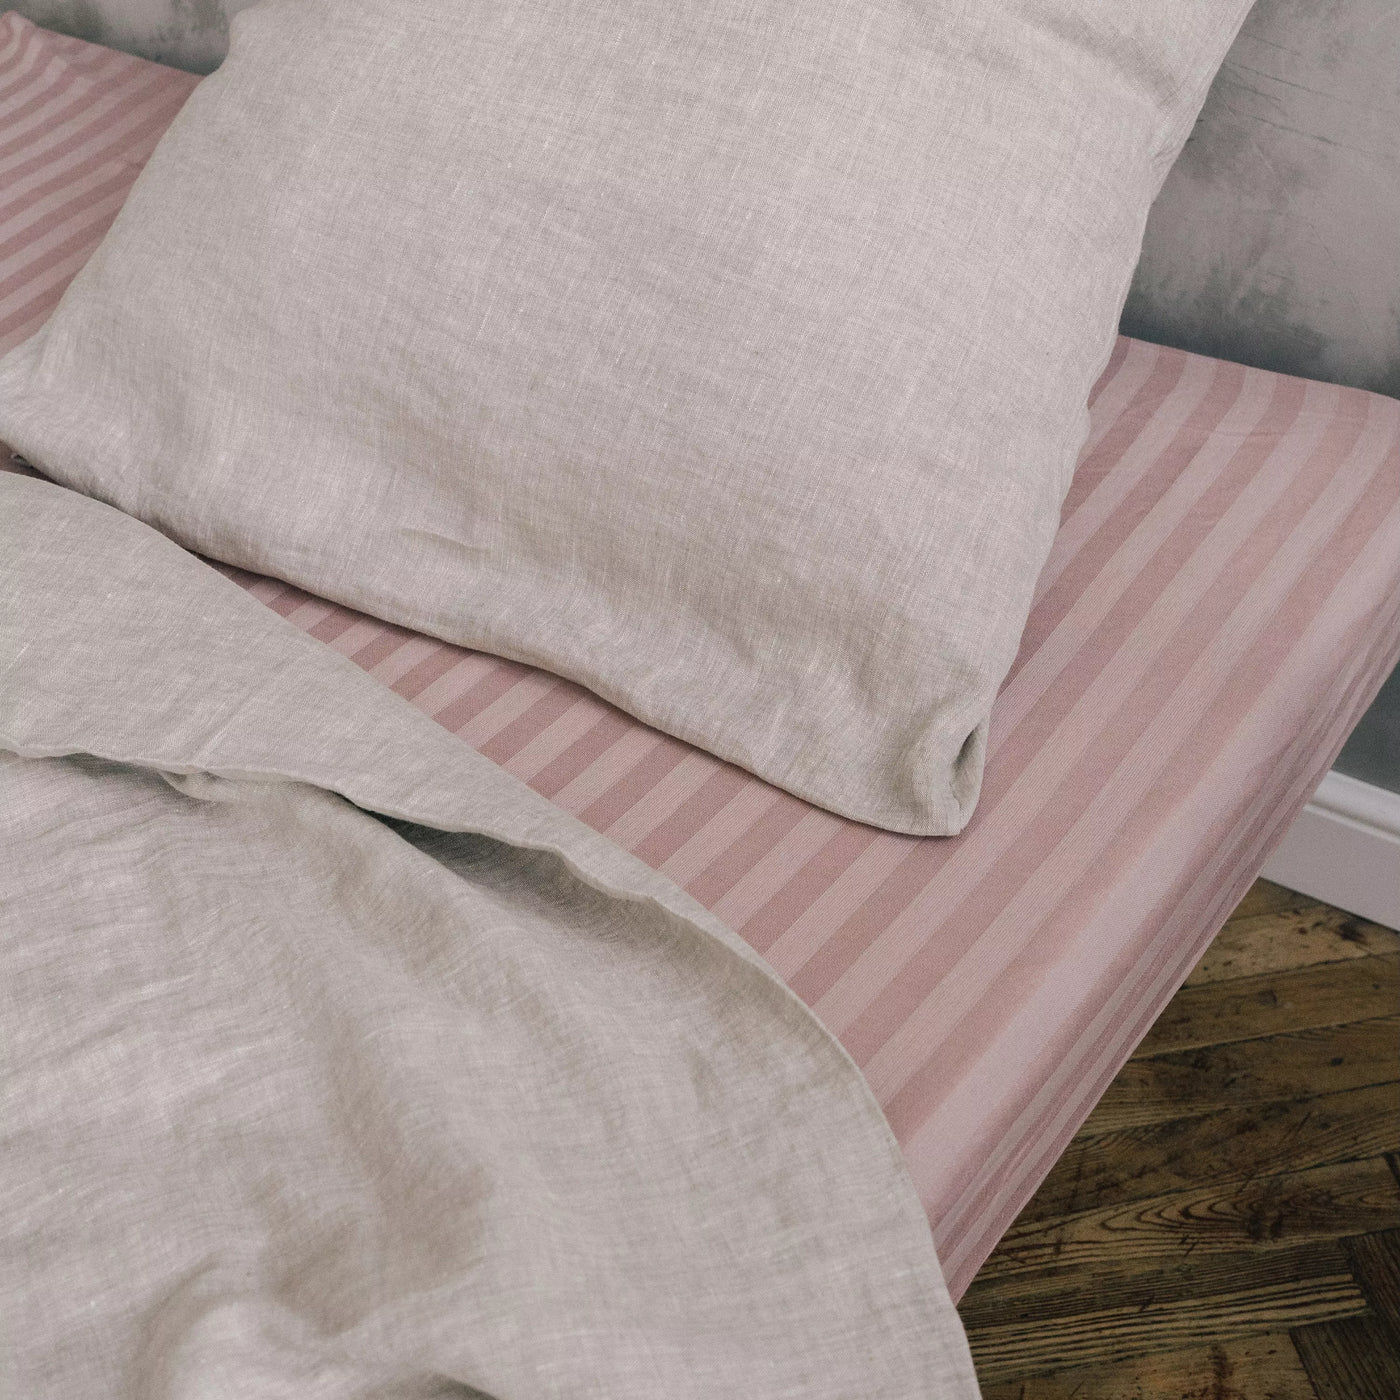 Acquista online il lenzuolo matrimoniale super soffice in lino e cotone a righe rosa 5